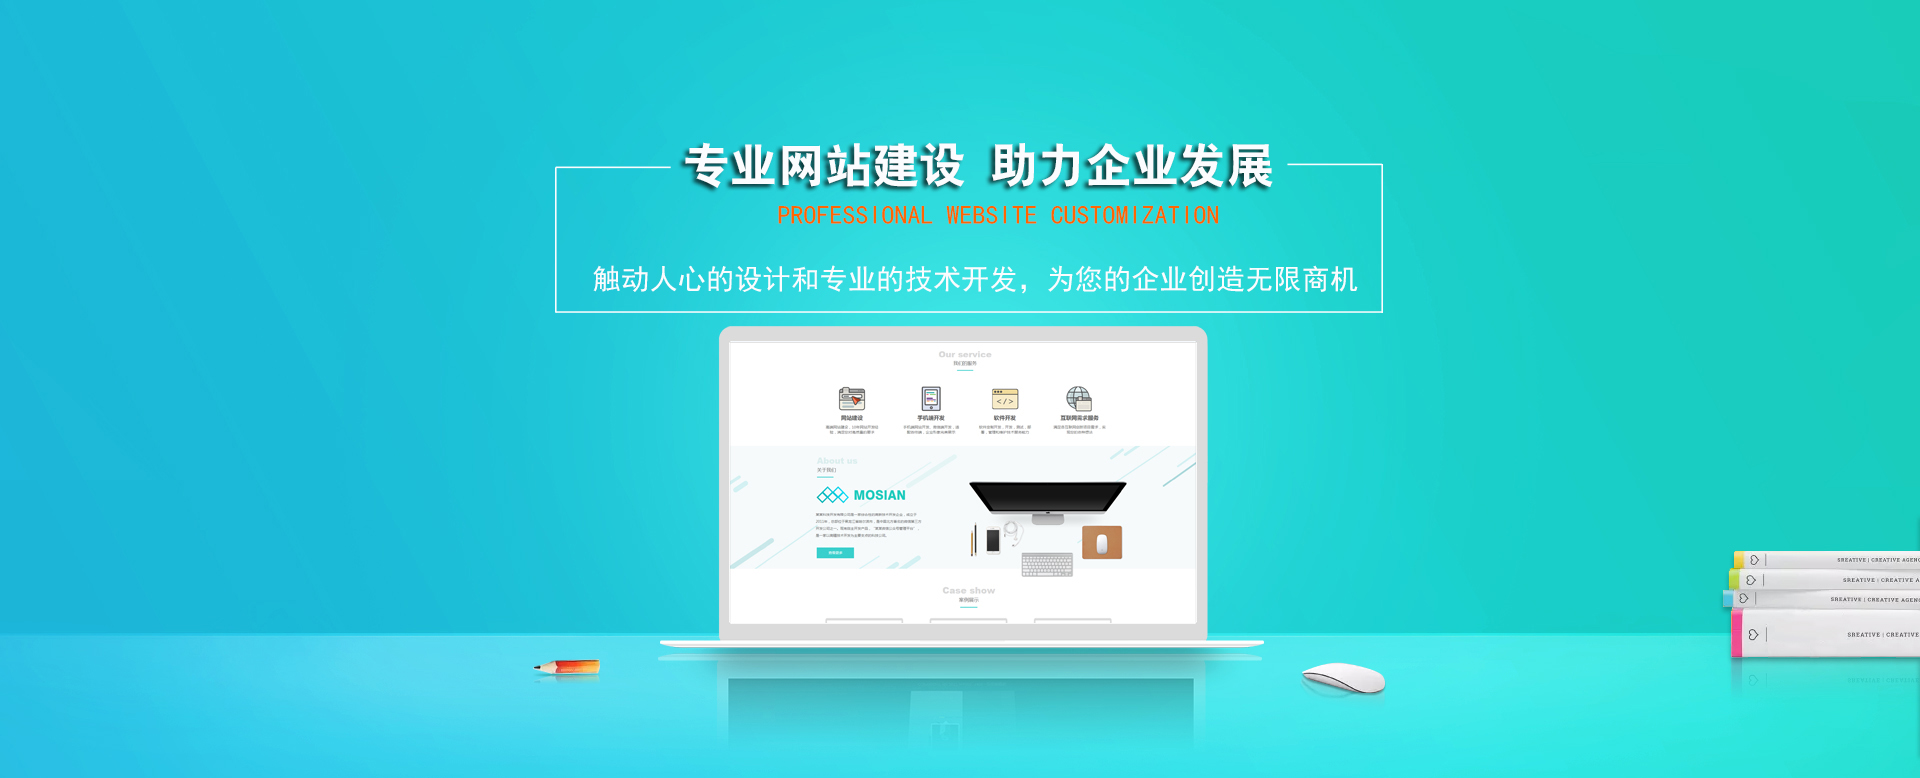 上海网站建设|上海网站制作|上海建网站公司|上海网站设计|上海网站优化|上海SEO|上海关键词排名|上海小程序开发